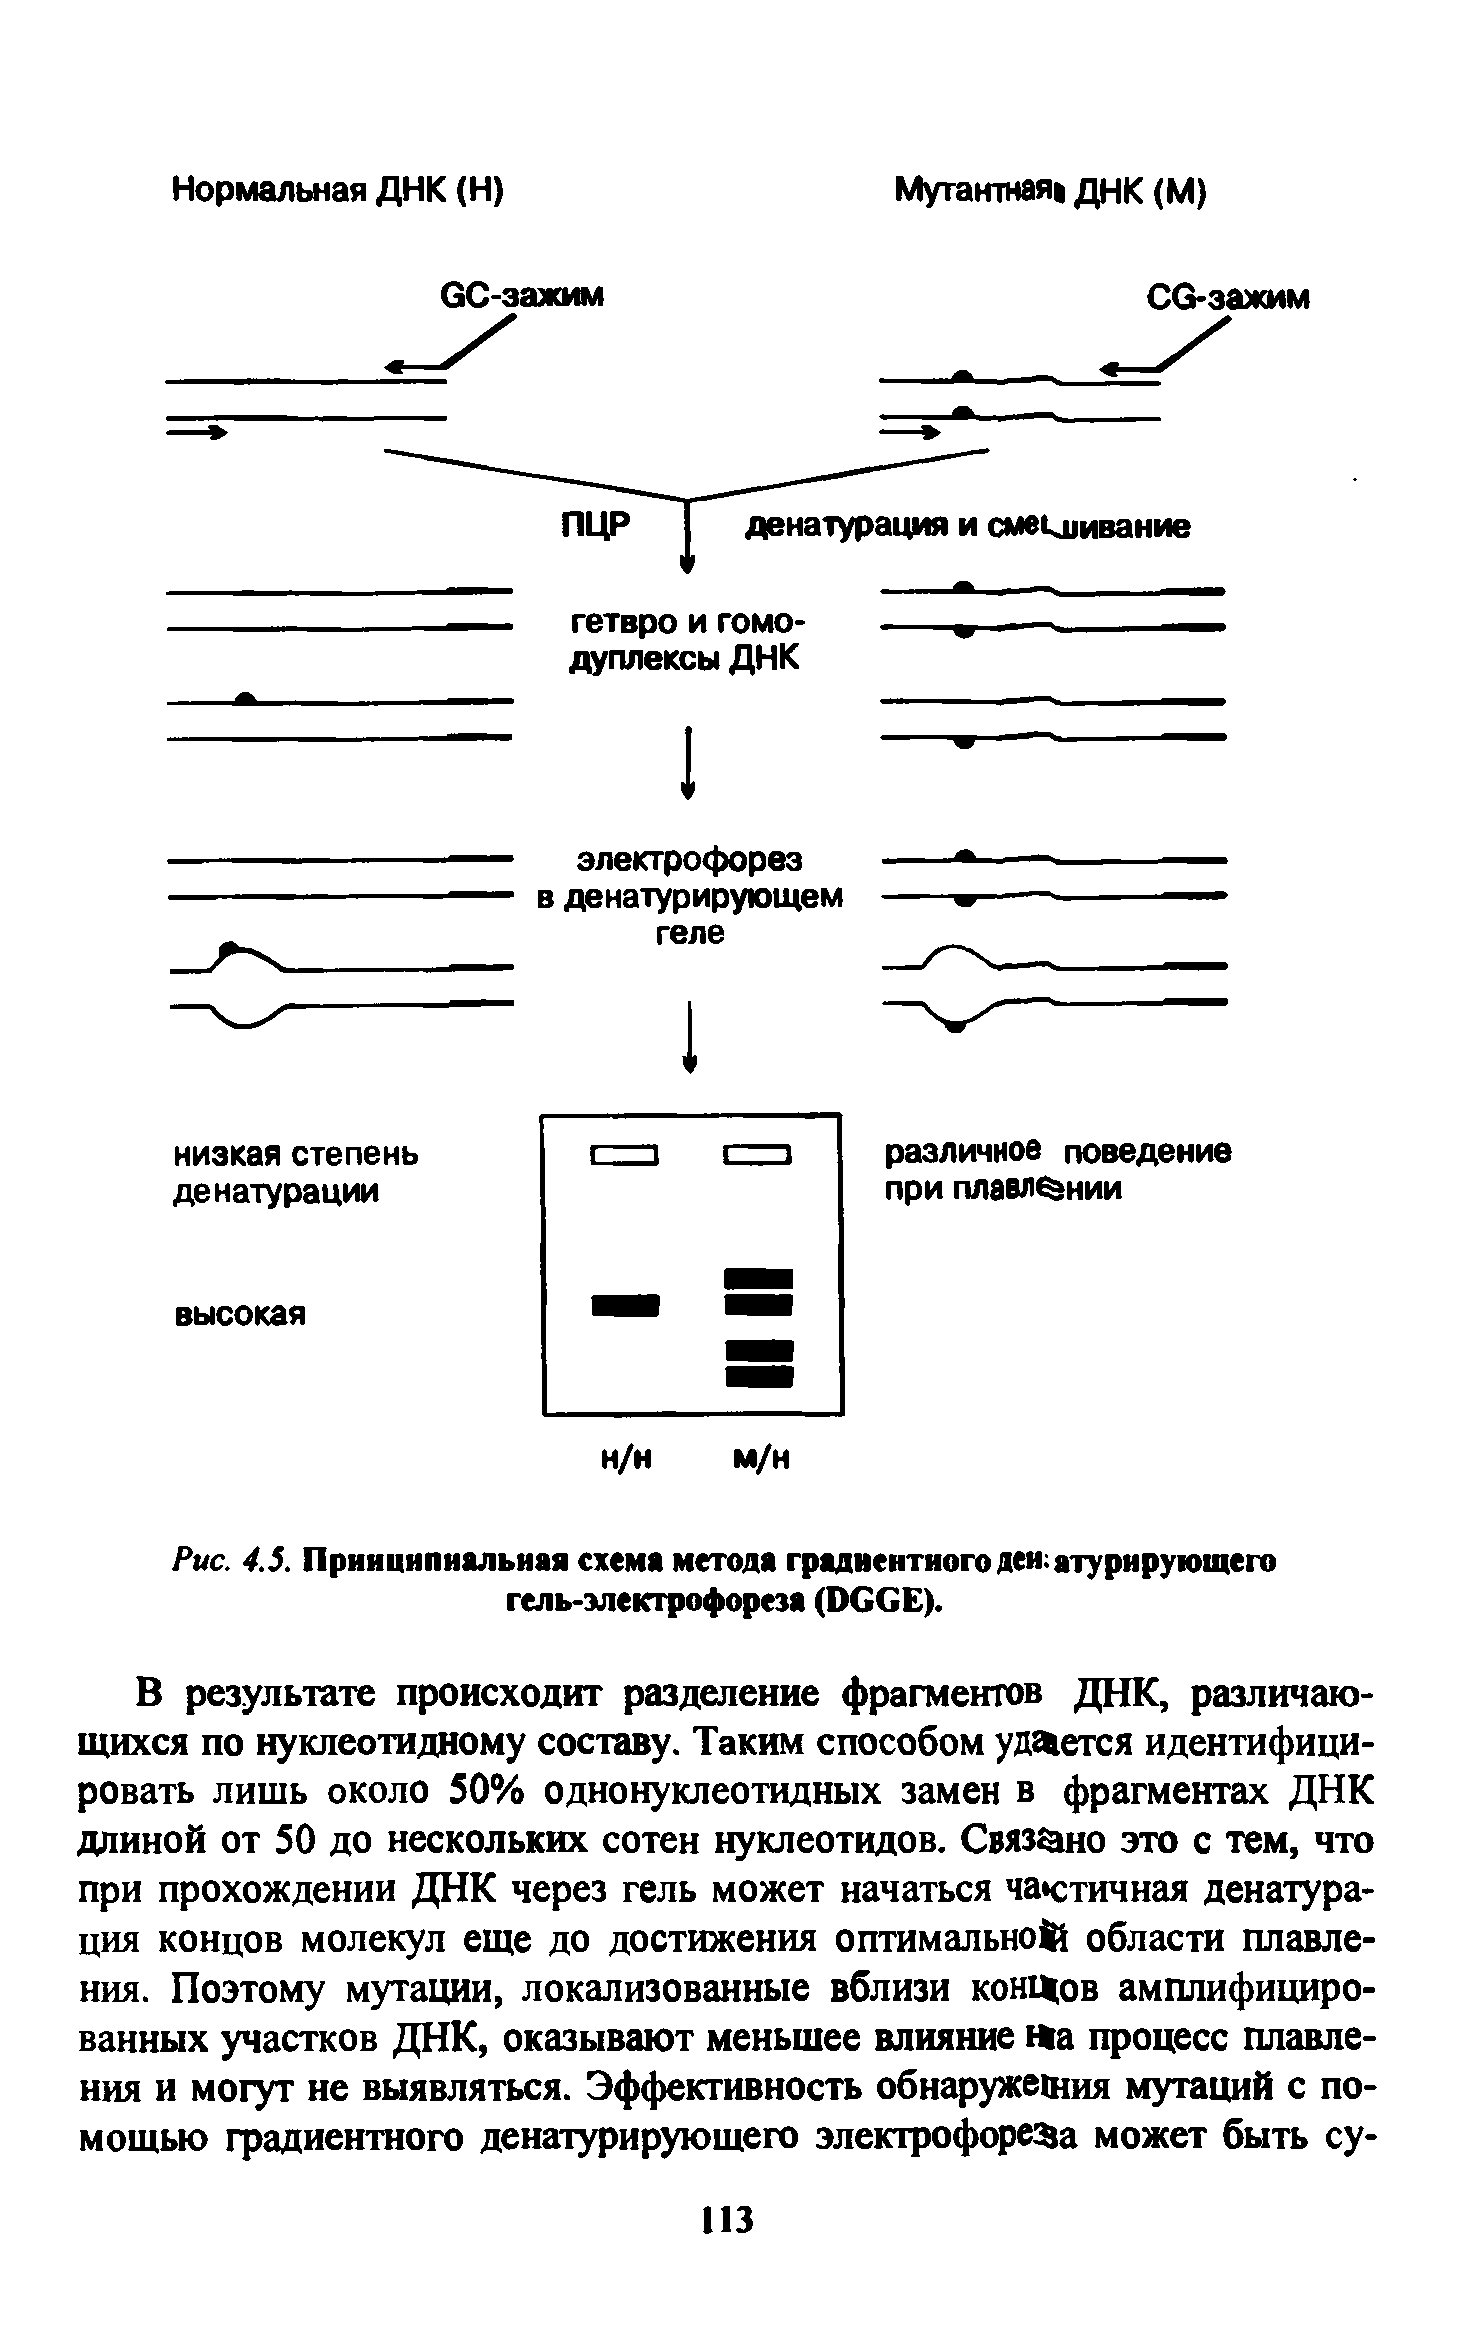 Рис. 4.5. Принципиальная схема метода градиентного денатурирующего гель-электрофореза (ОССЕ).